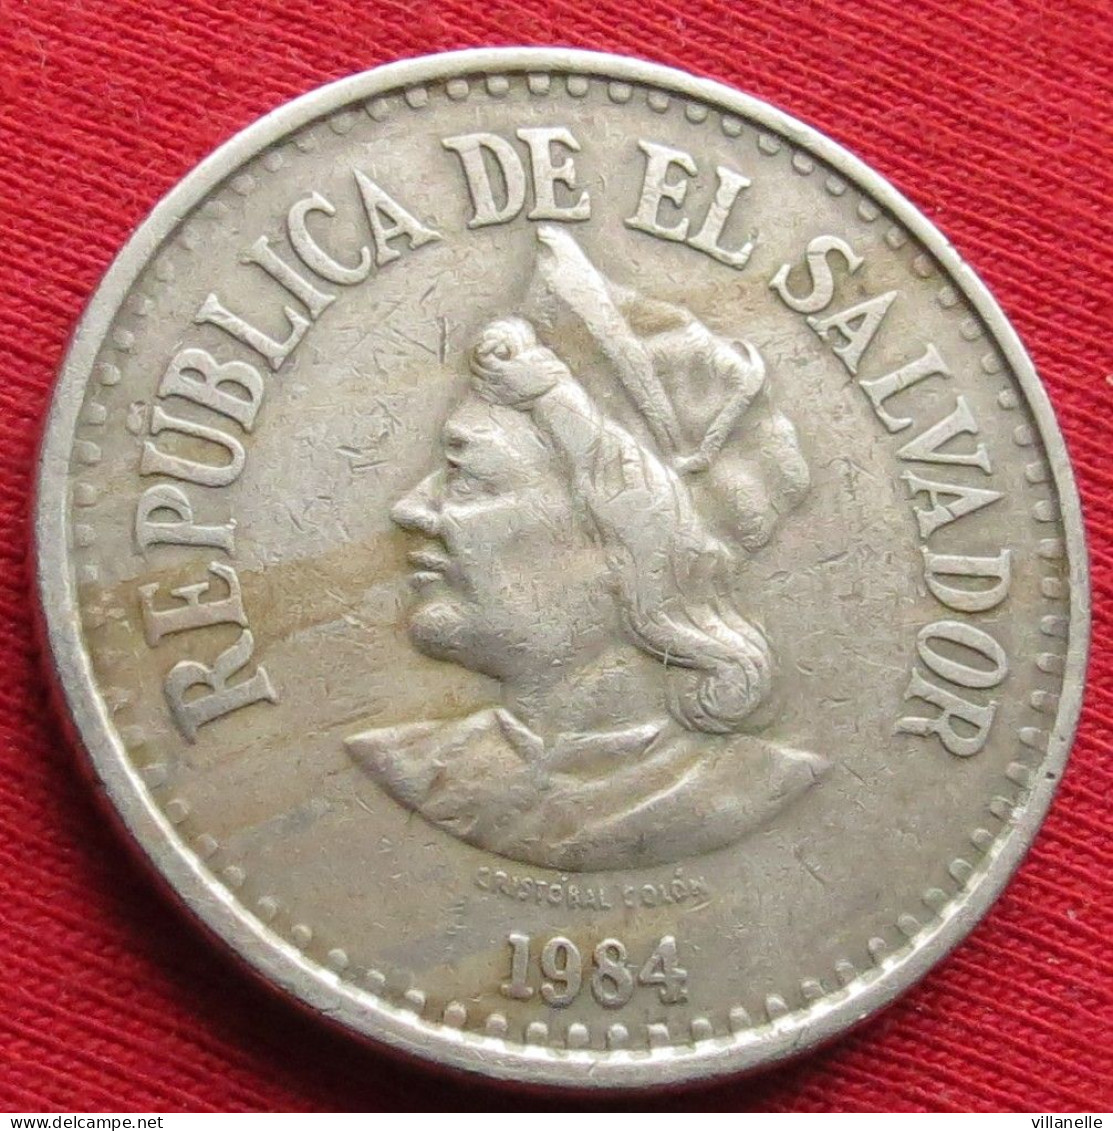 El Salvador 1 Colon 1984 W ºº - Salvador